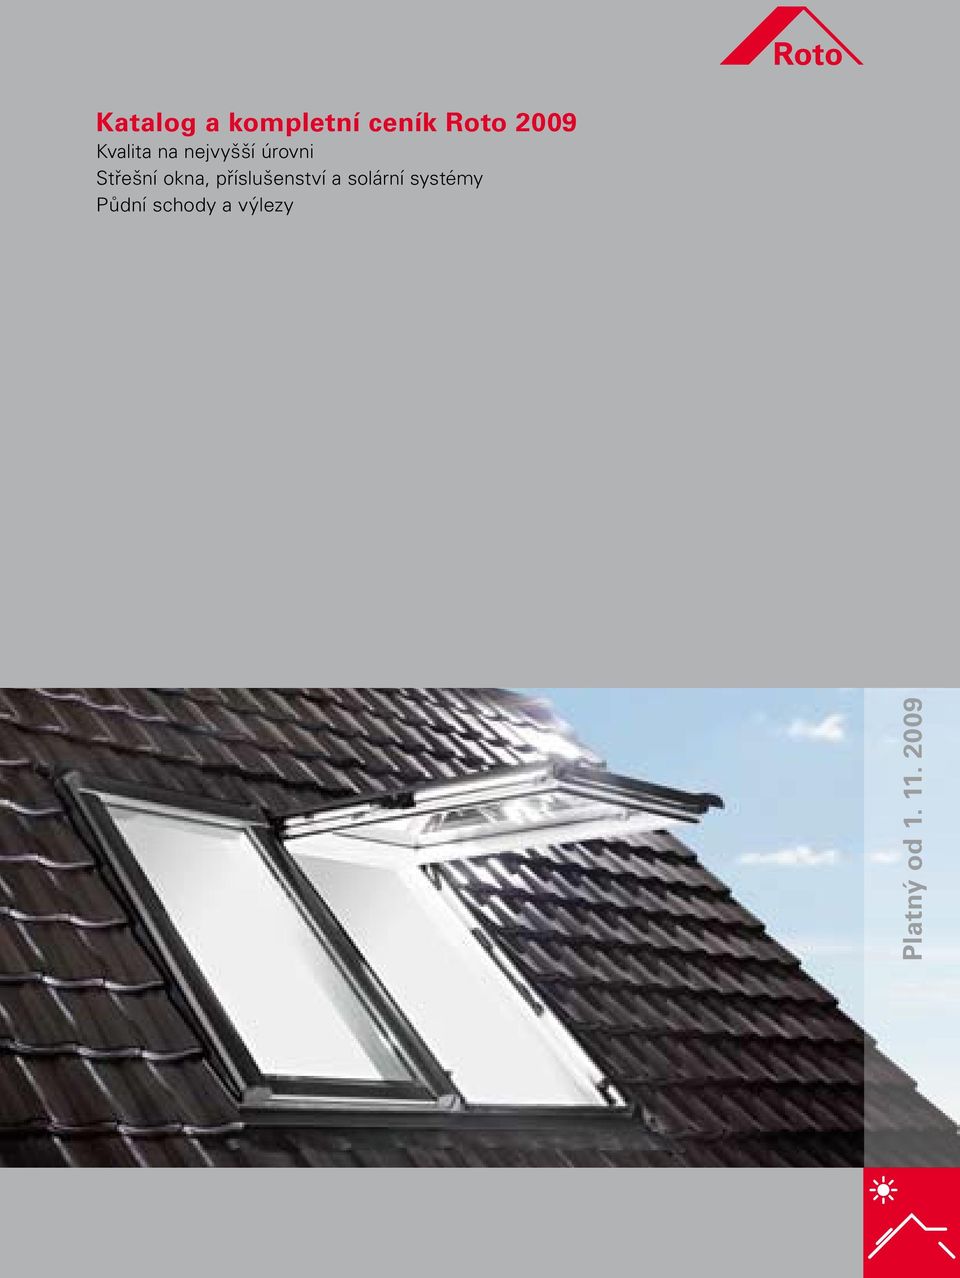 okna, příslušenství a solární systémy